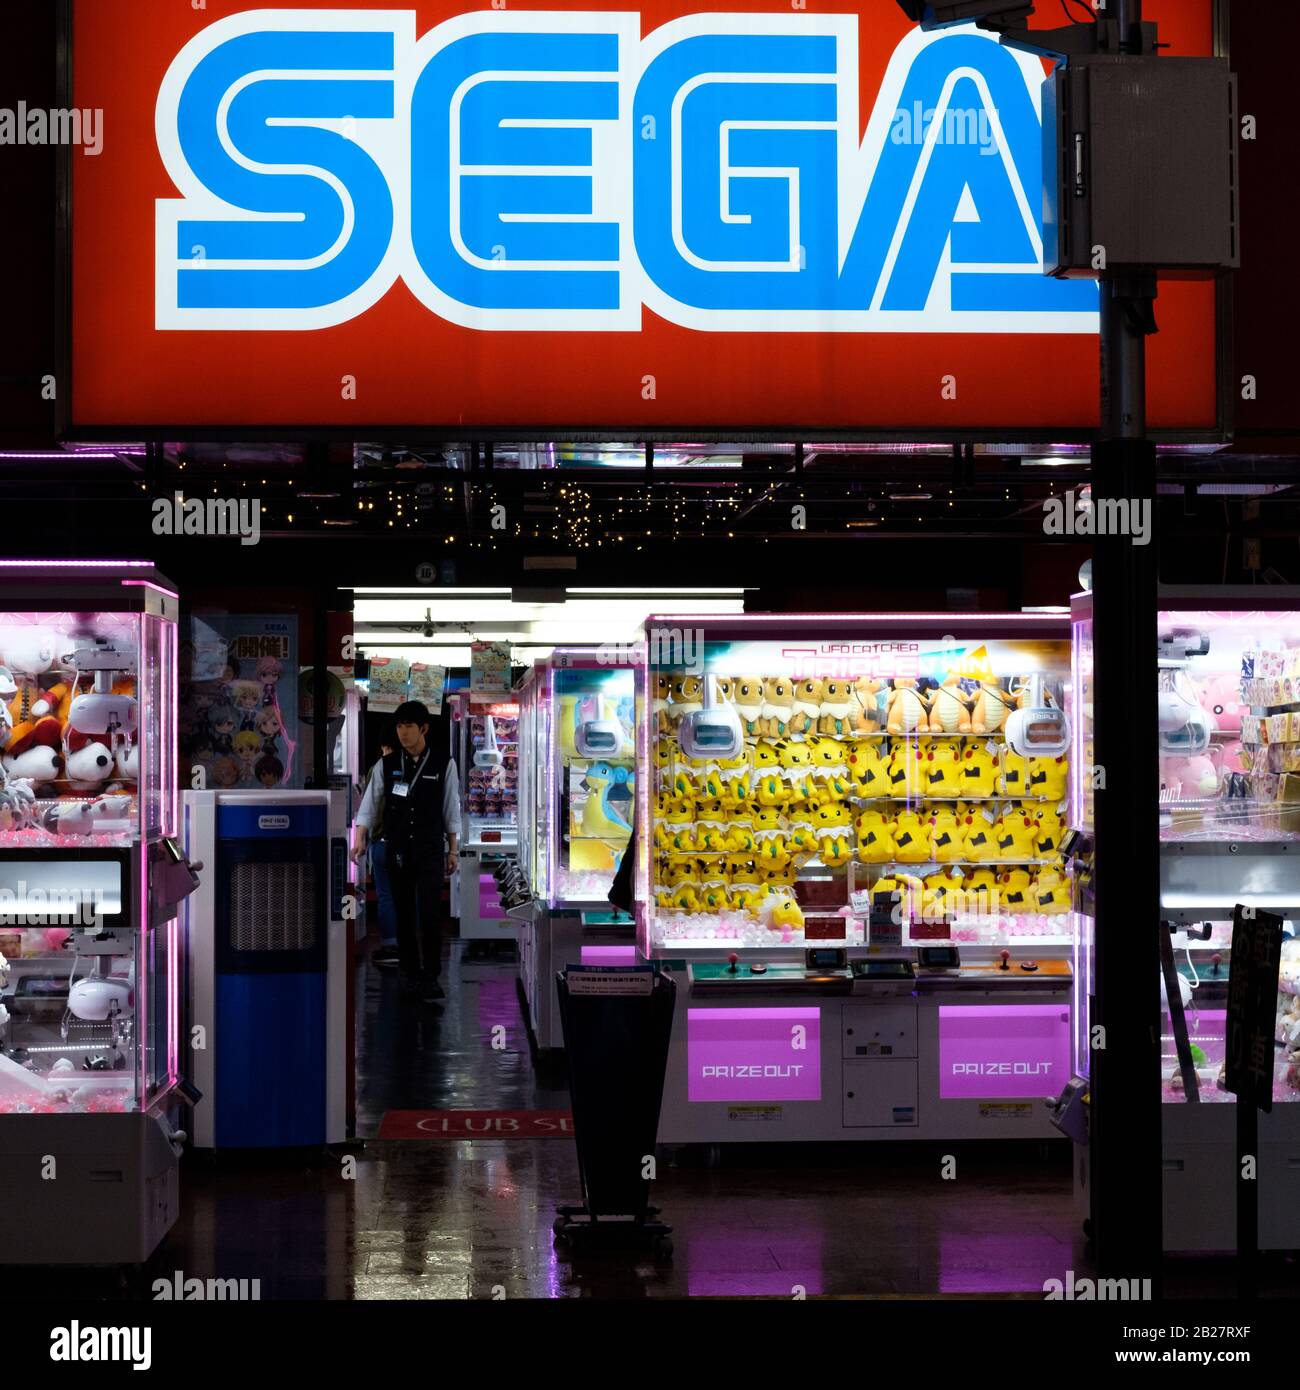 Signalisation dans une salle de jeux Sega lors d'une nuit de pluie à Shinjuku, Tokyo, Japon. Banque D'Images